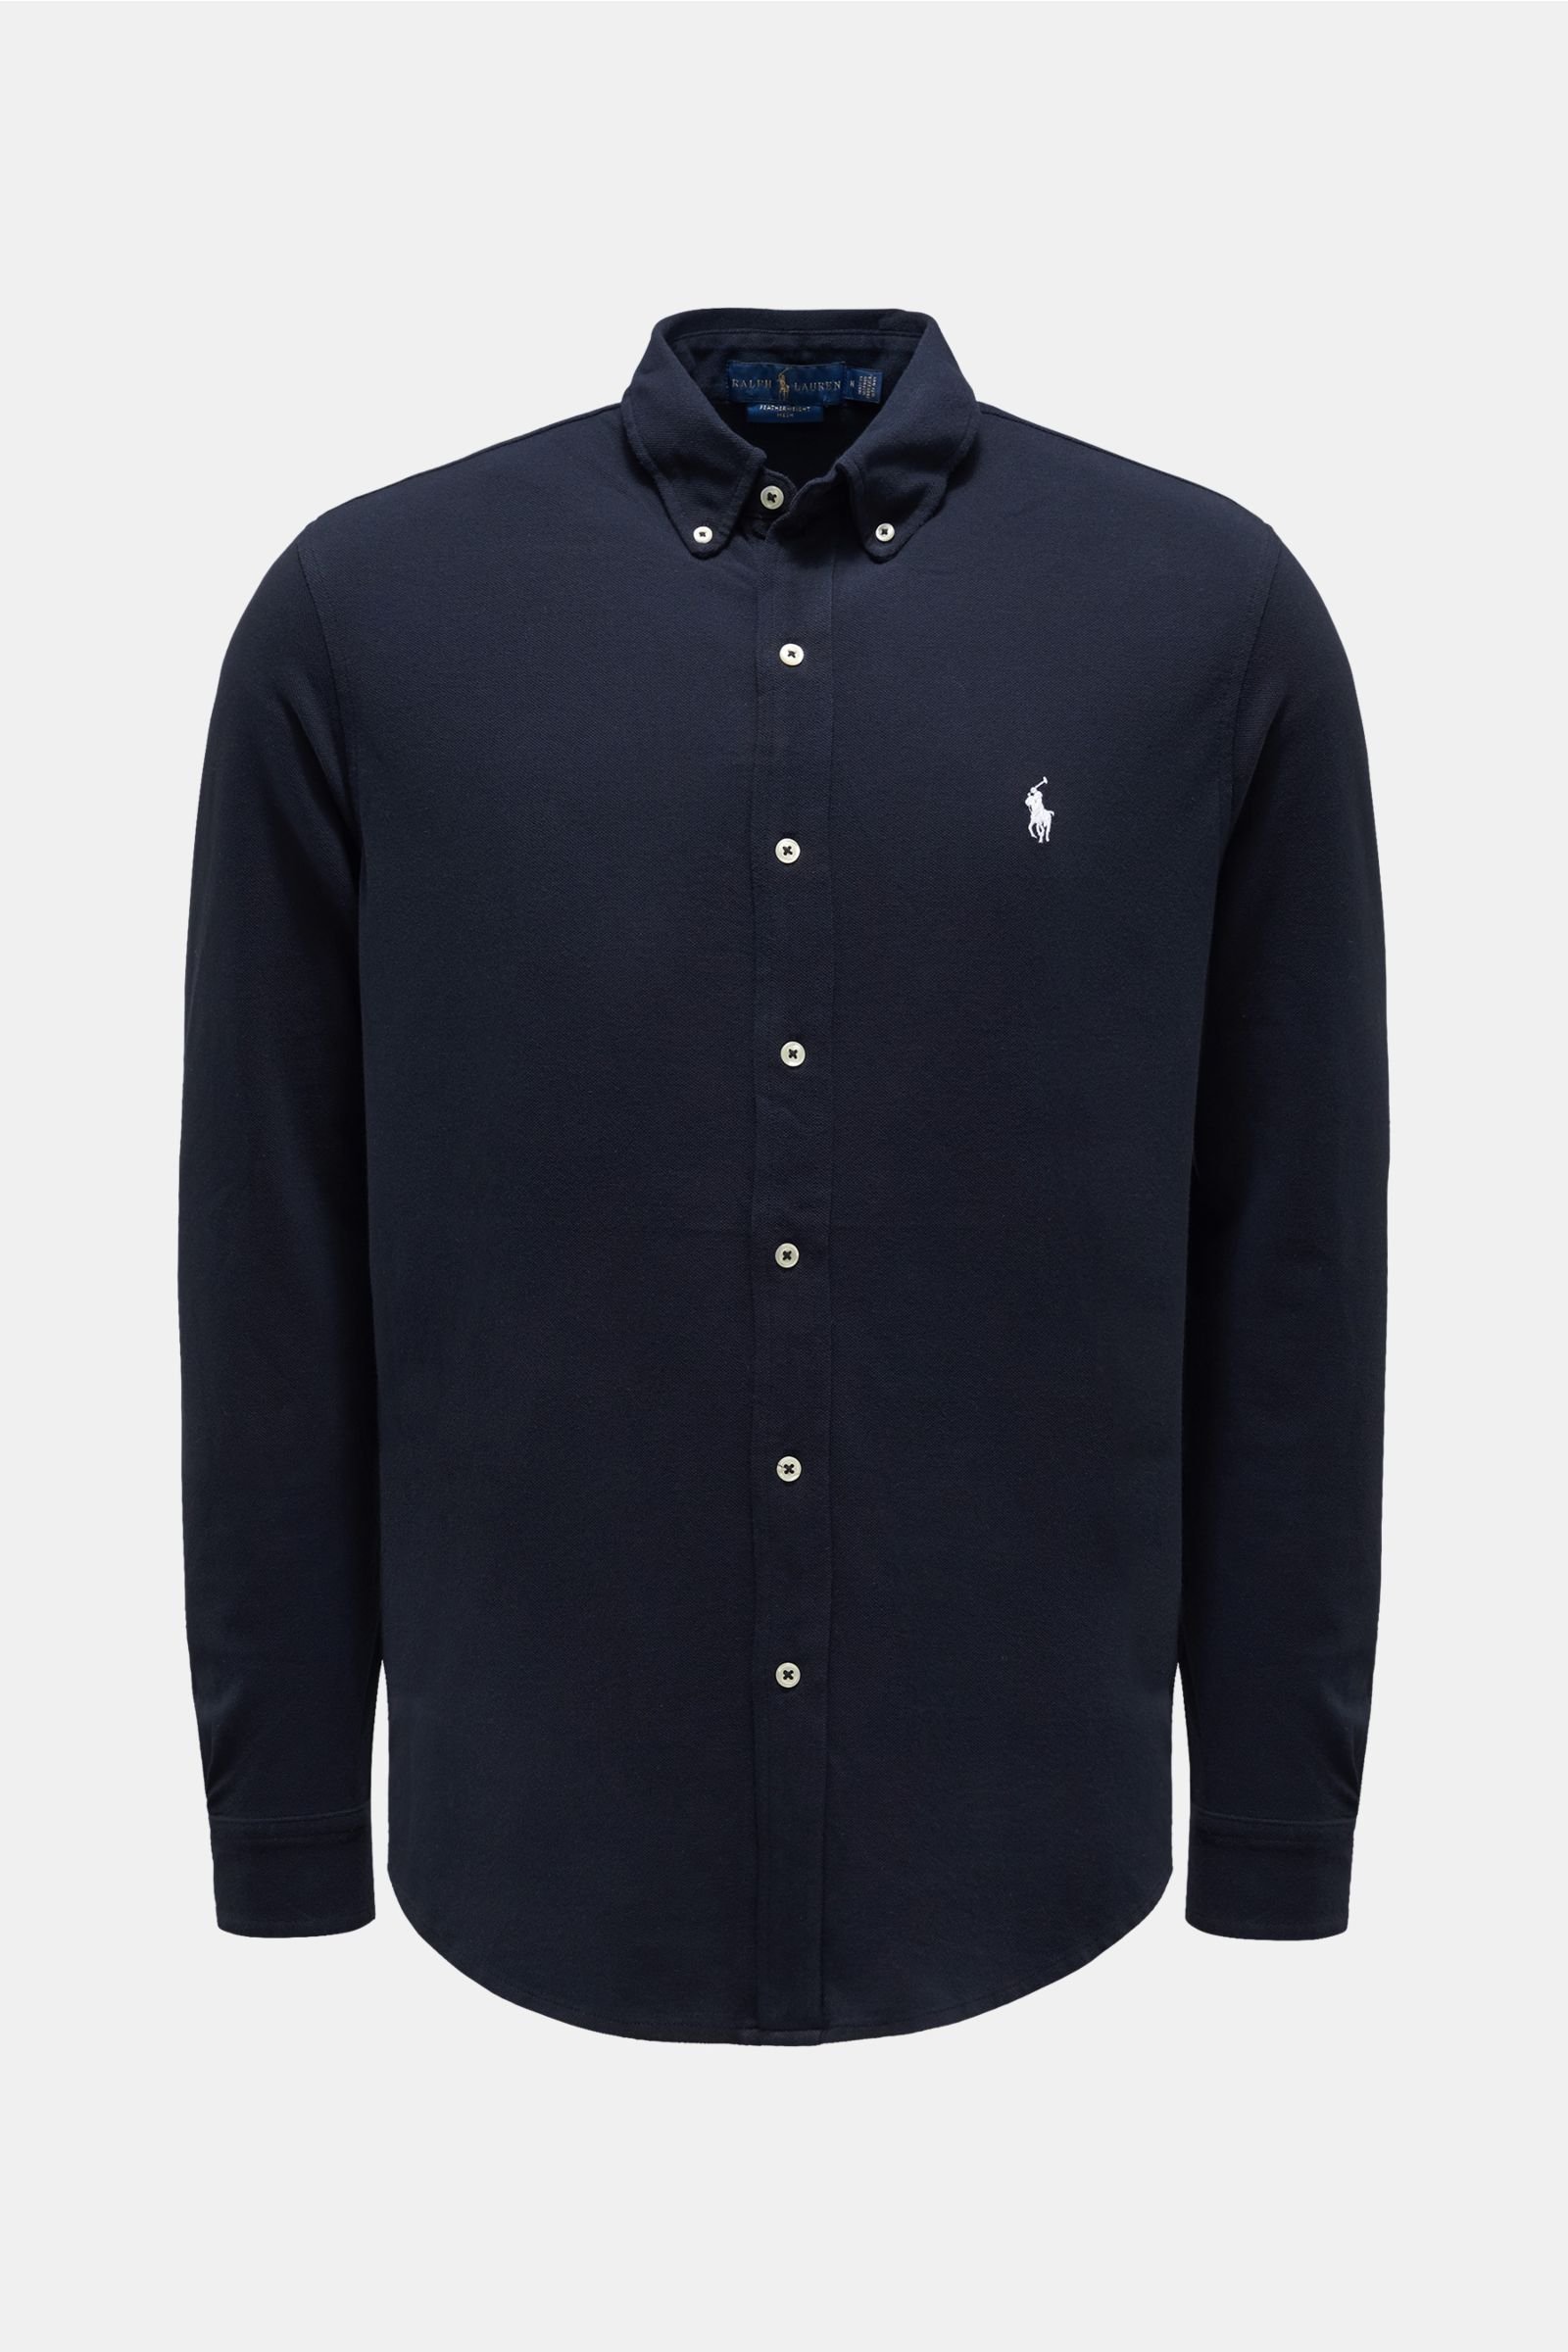 Jersey shirt button-down collar navy